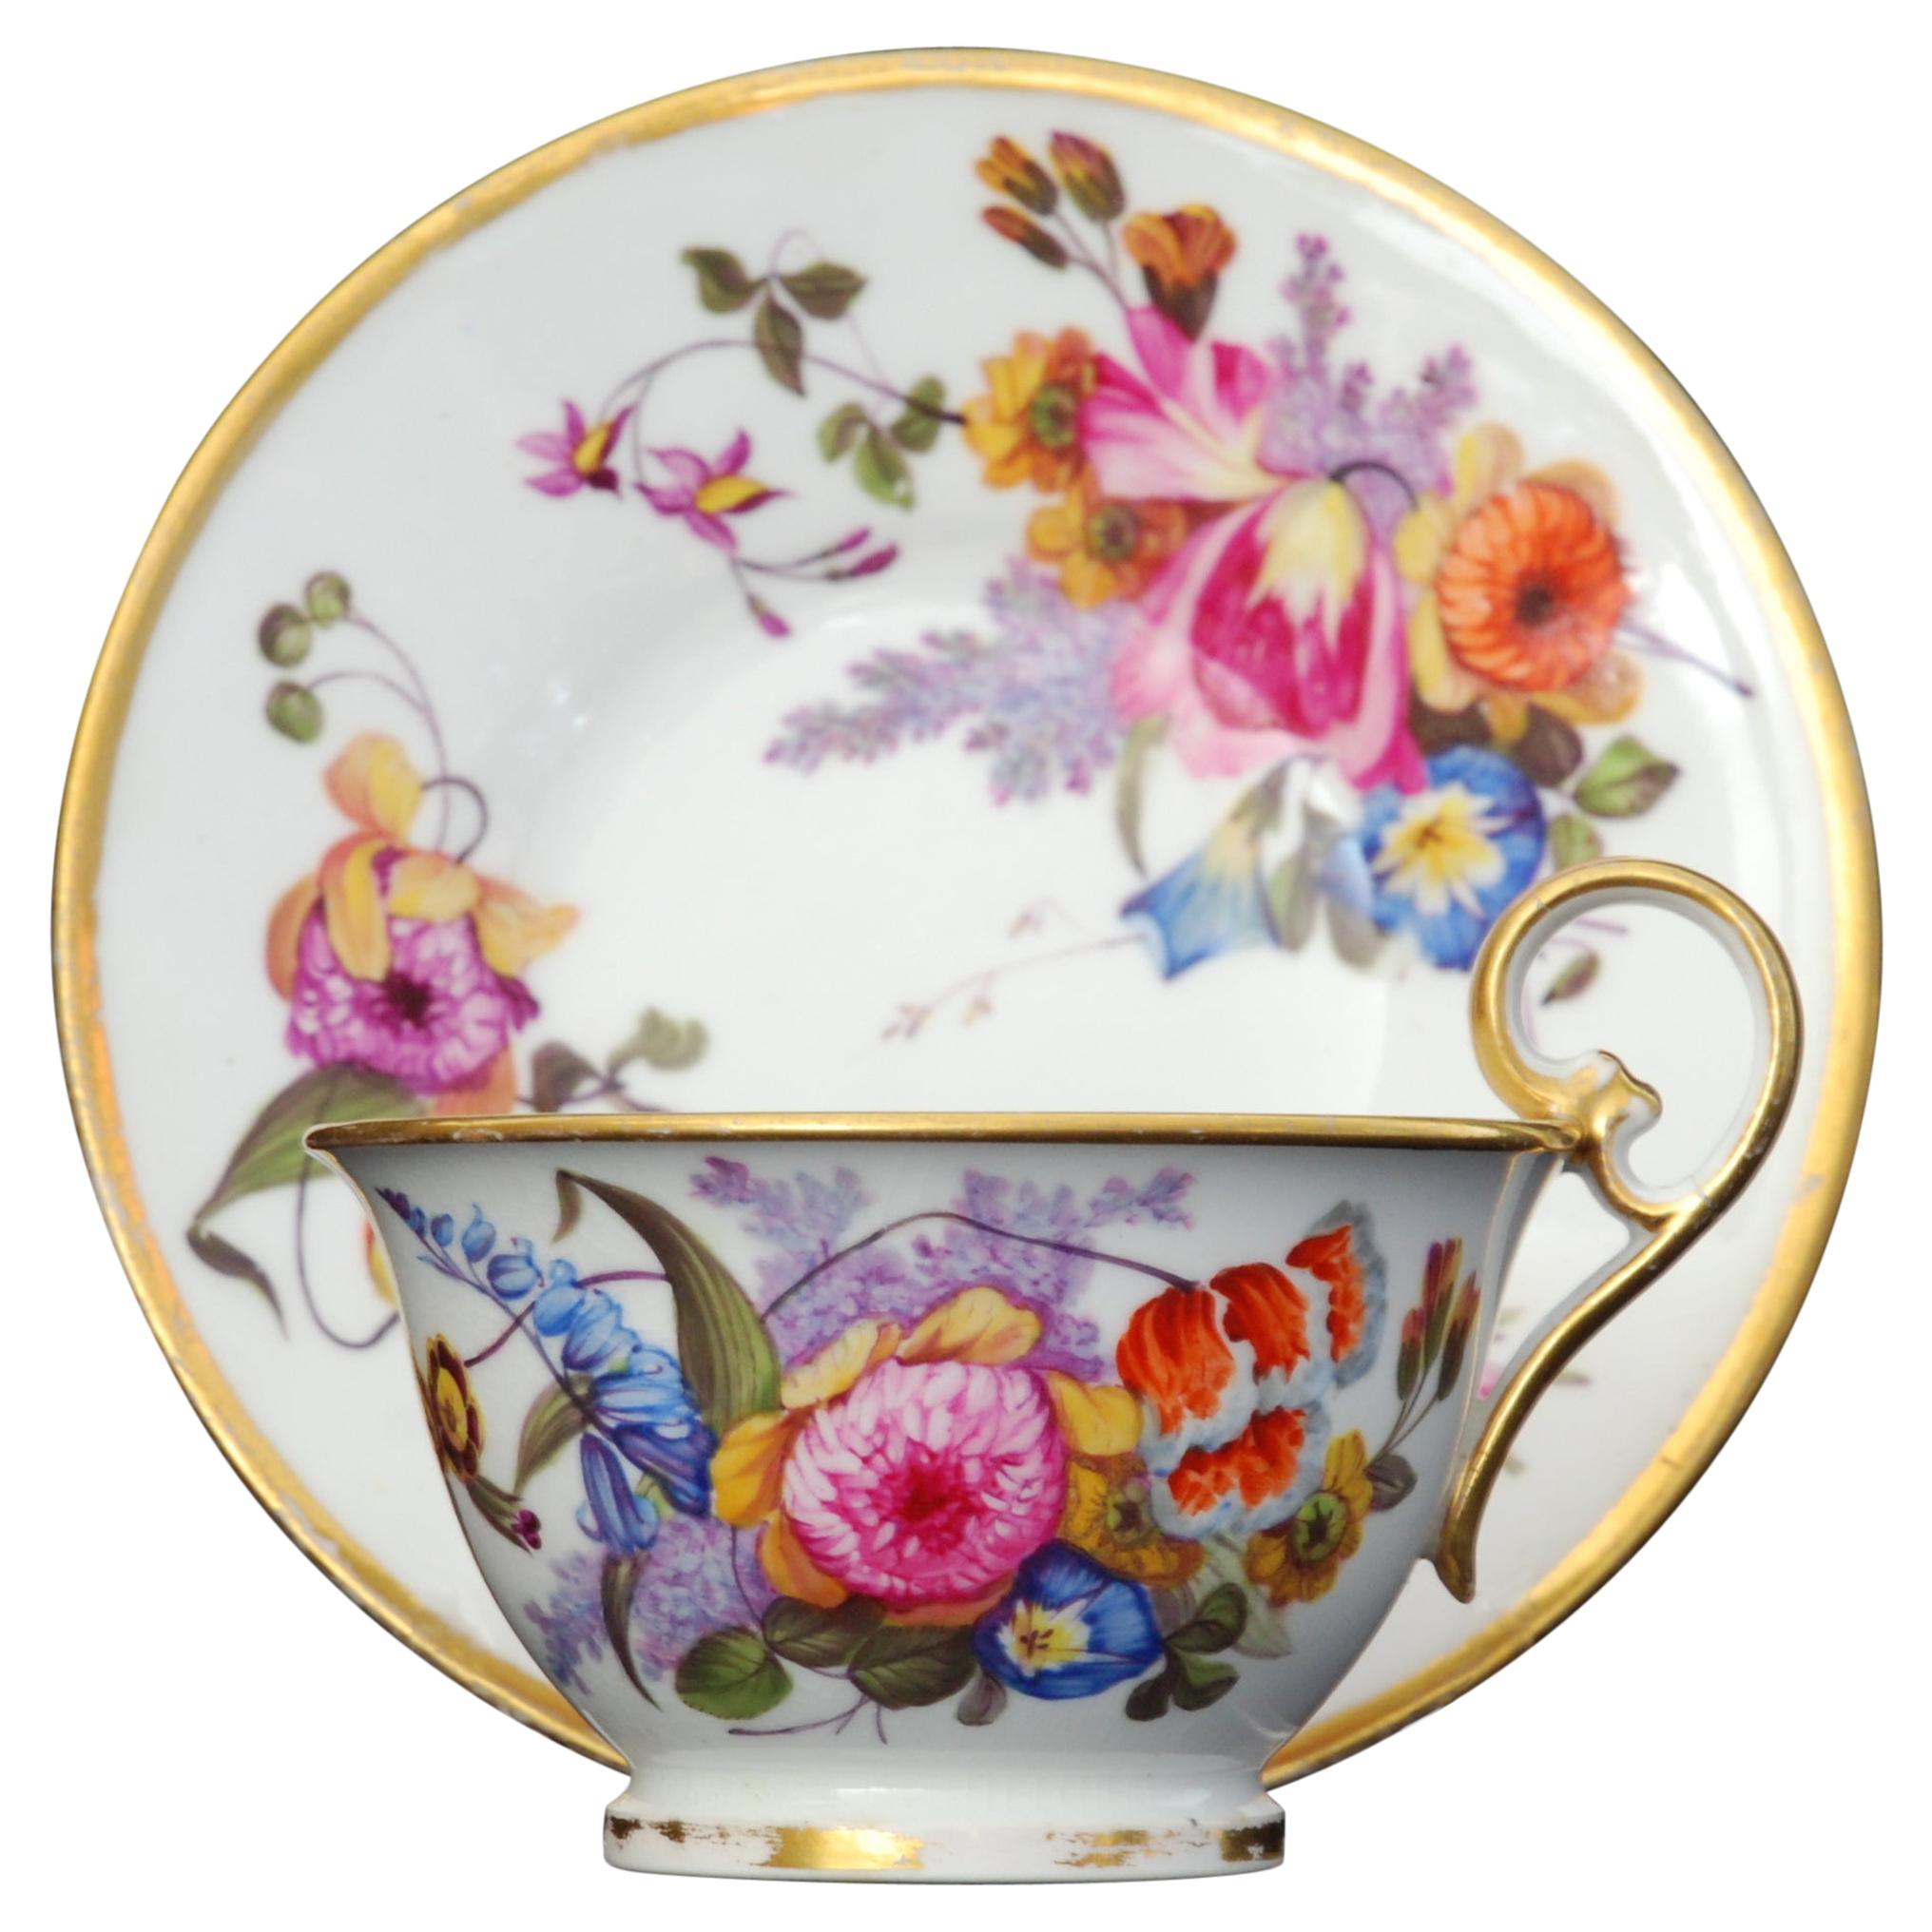 Tea Cup and Saucer Nantgarw Porcelain, circa 1815